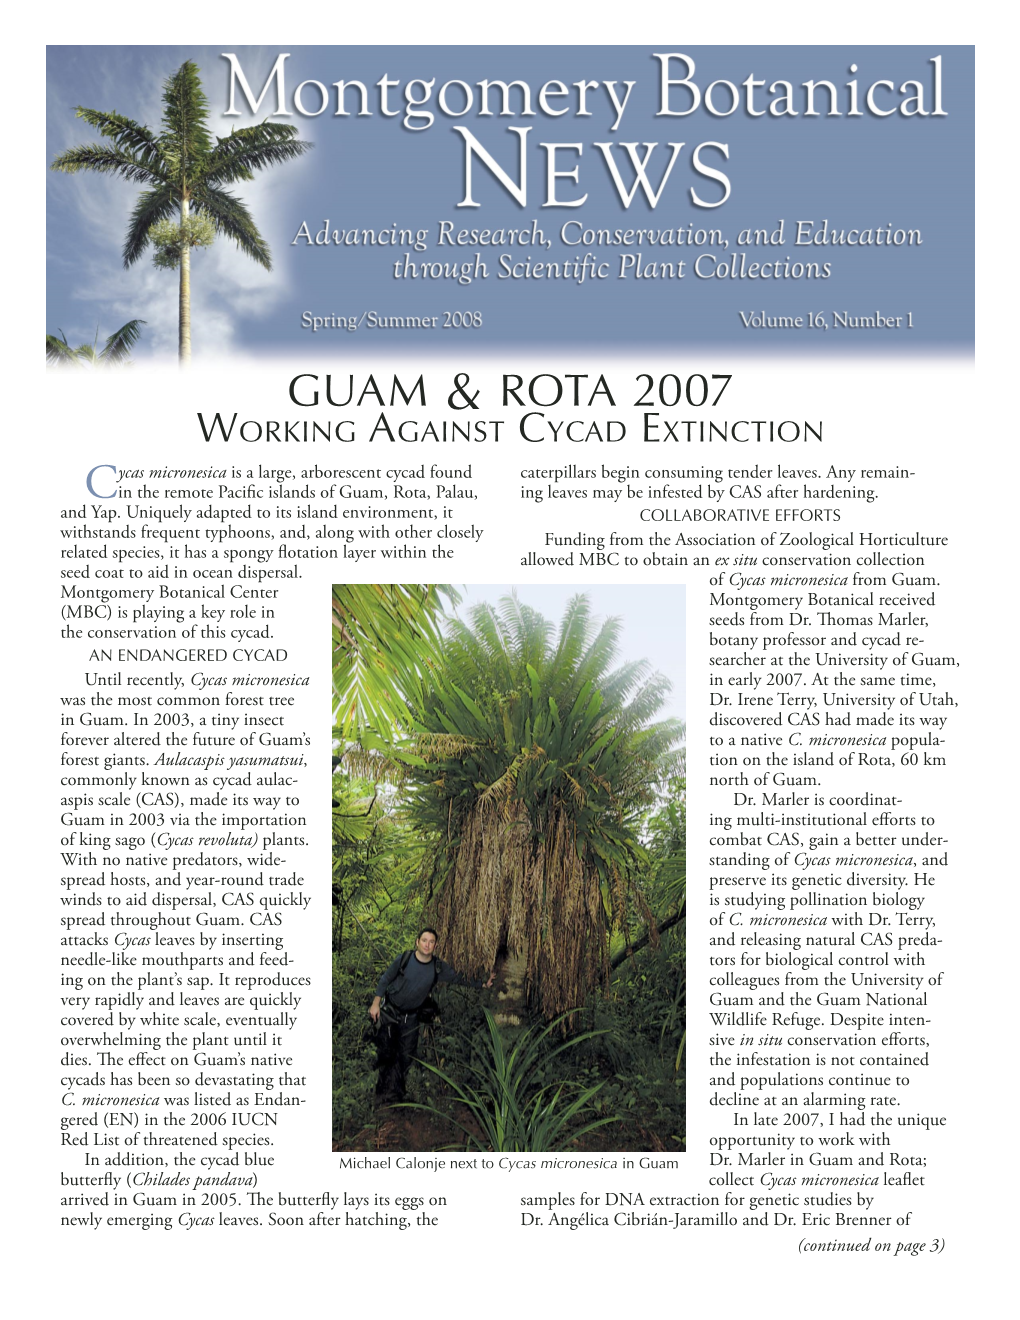 Guam & Rota 2007